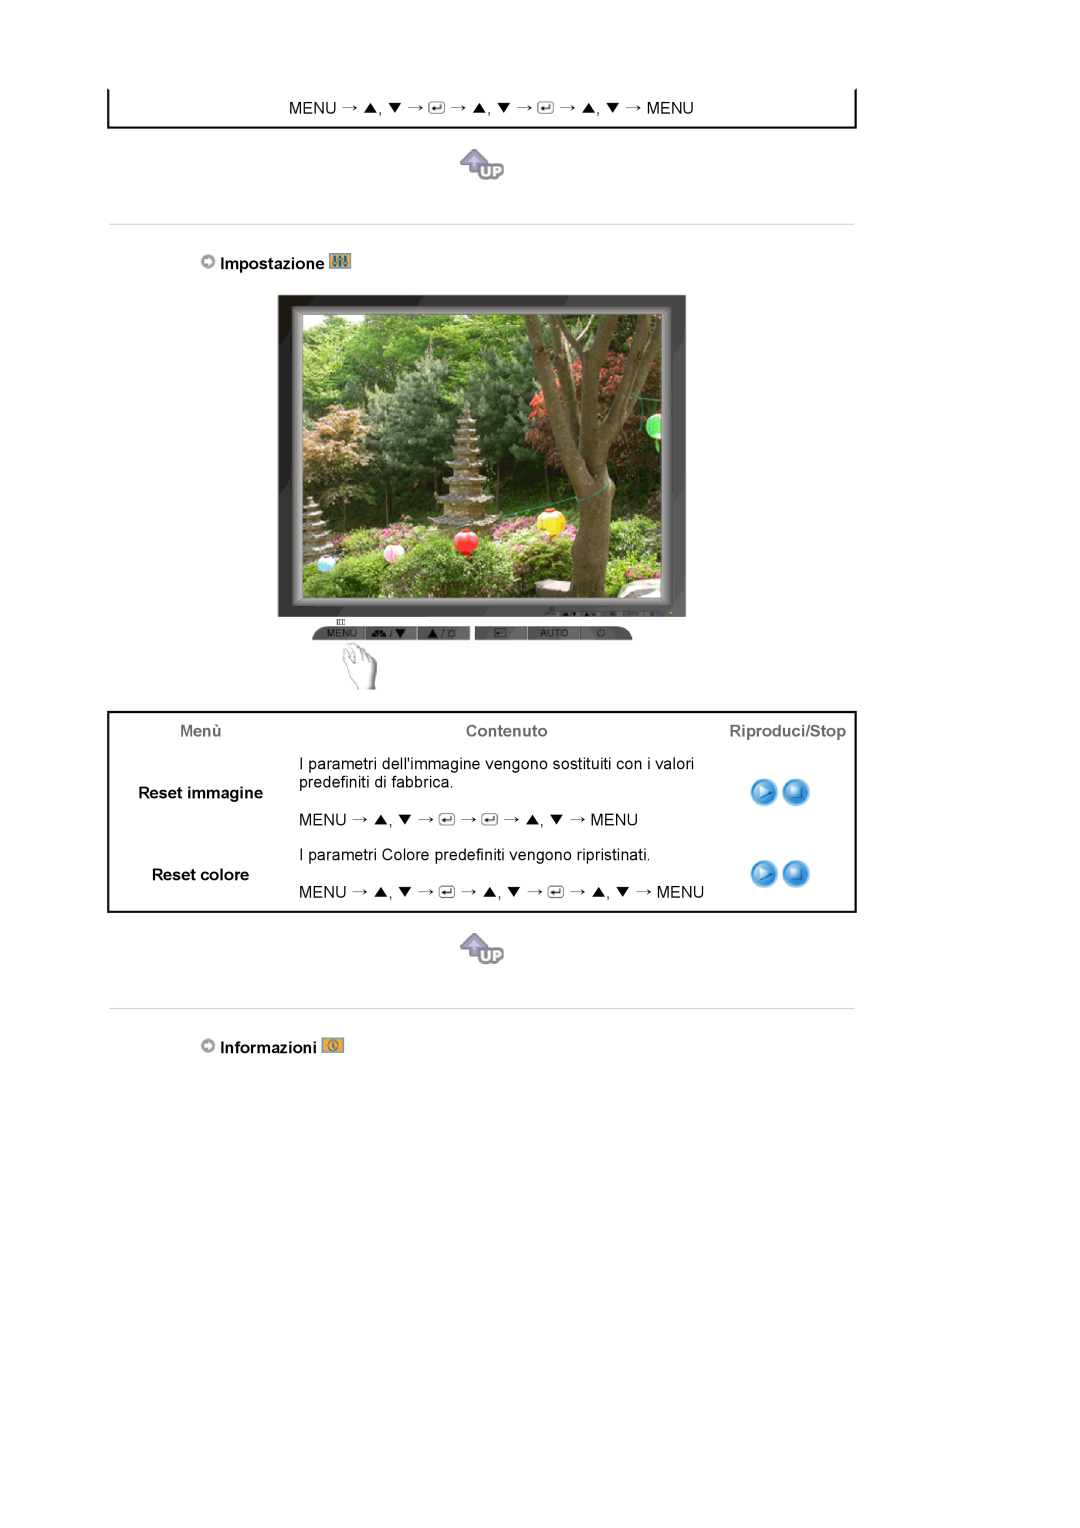 Samsung LS17MJVKS/EDC manual Impostazione, Reset immagine Reset colore, Informazioni, Menù, ContenutoRiproduci/Stop 